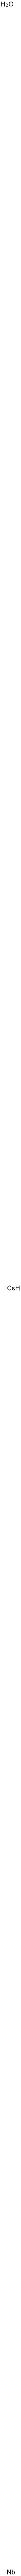 ニオブ酸セシウム 化学構造式